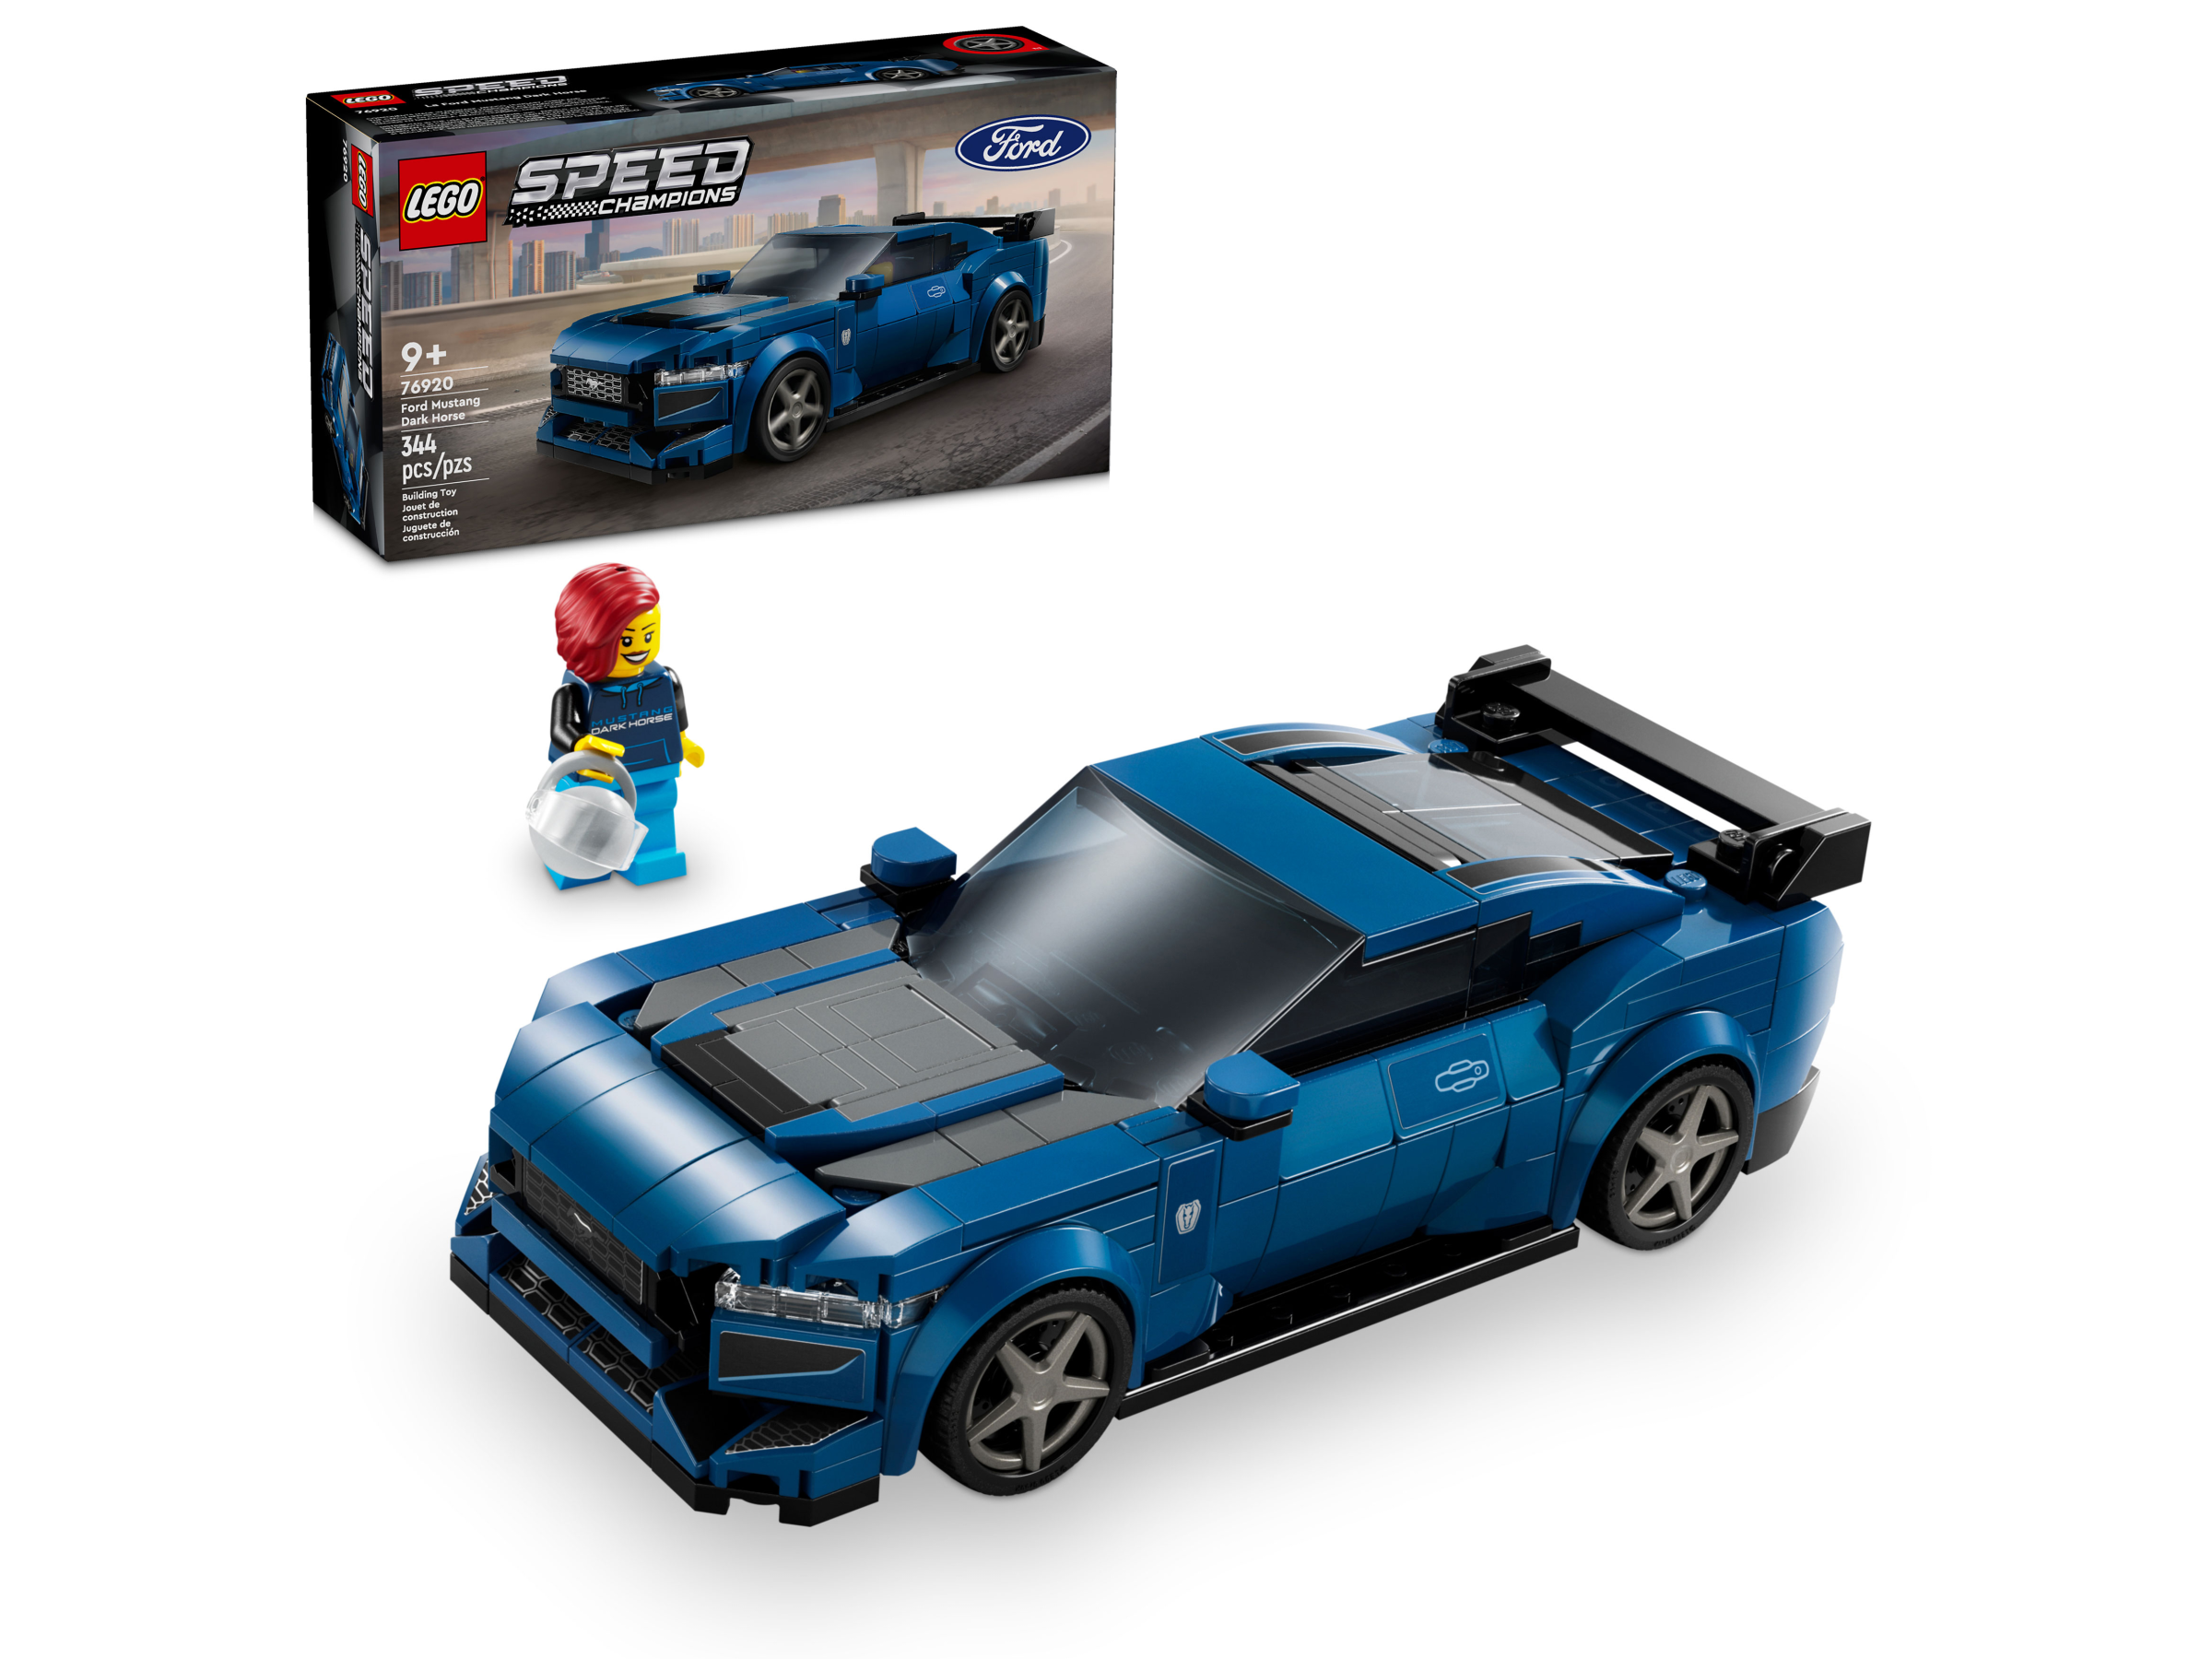 Lego Speed Champions Mustang Dark Horse et Audi S1 E-Tron dévoilés